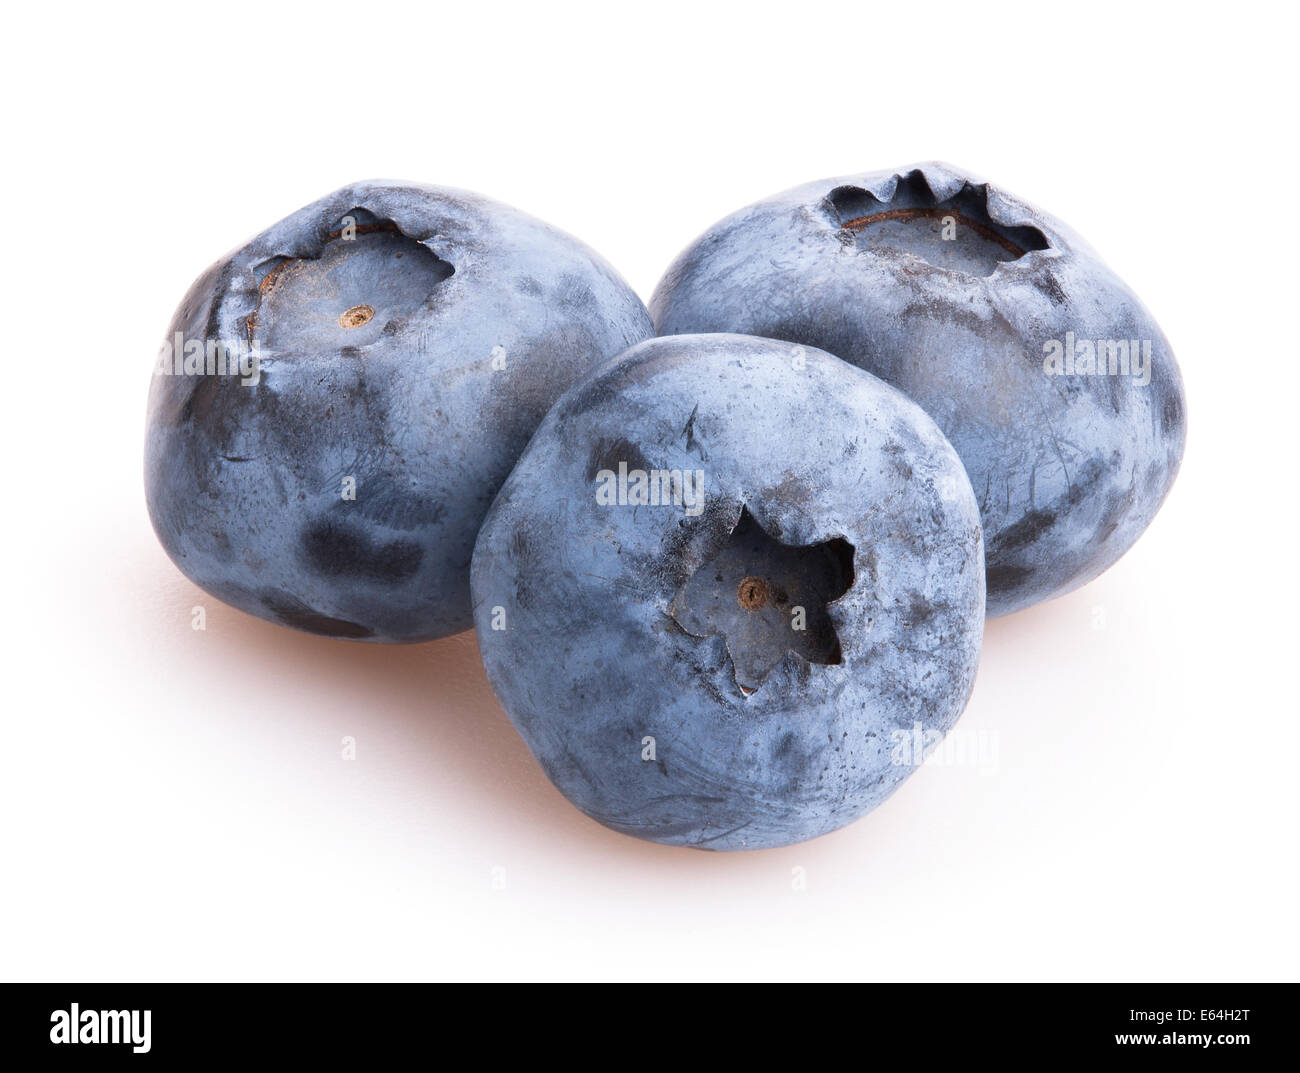 blueberry isolated Stock Photo